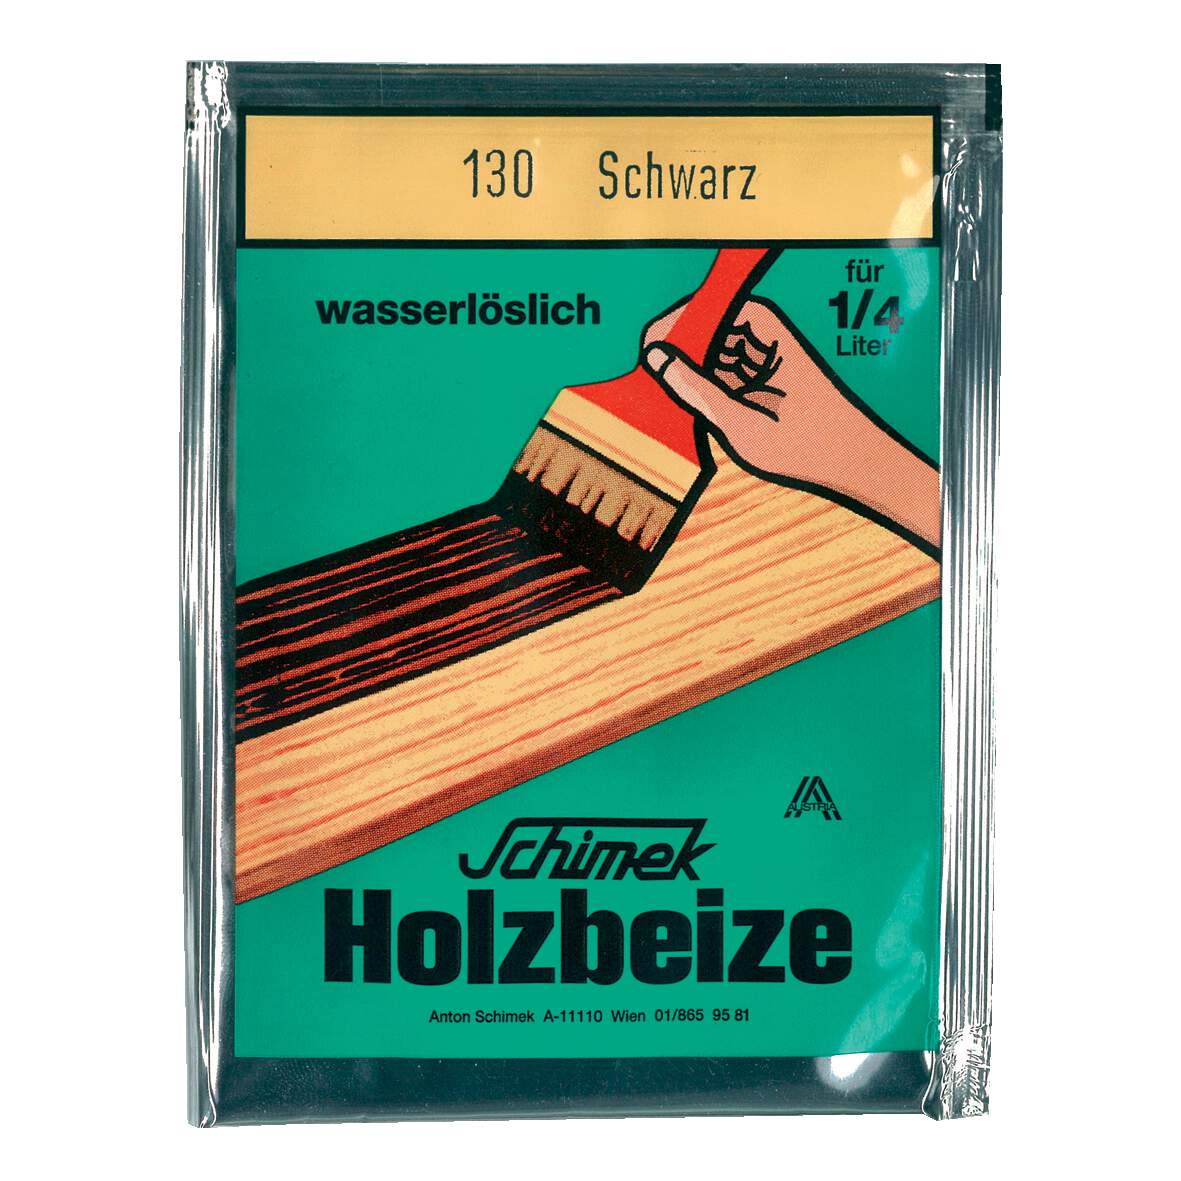 1216648 - Holzbeize wasserlöslich